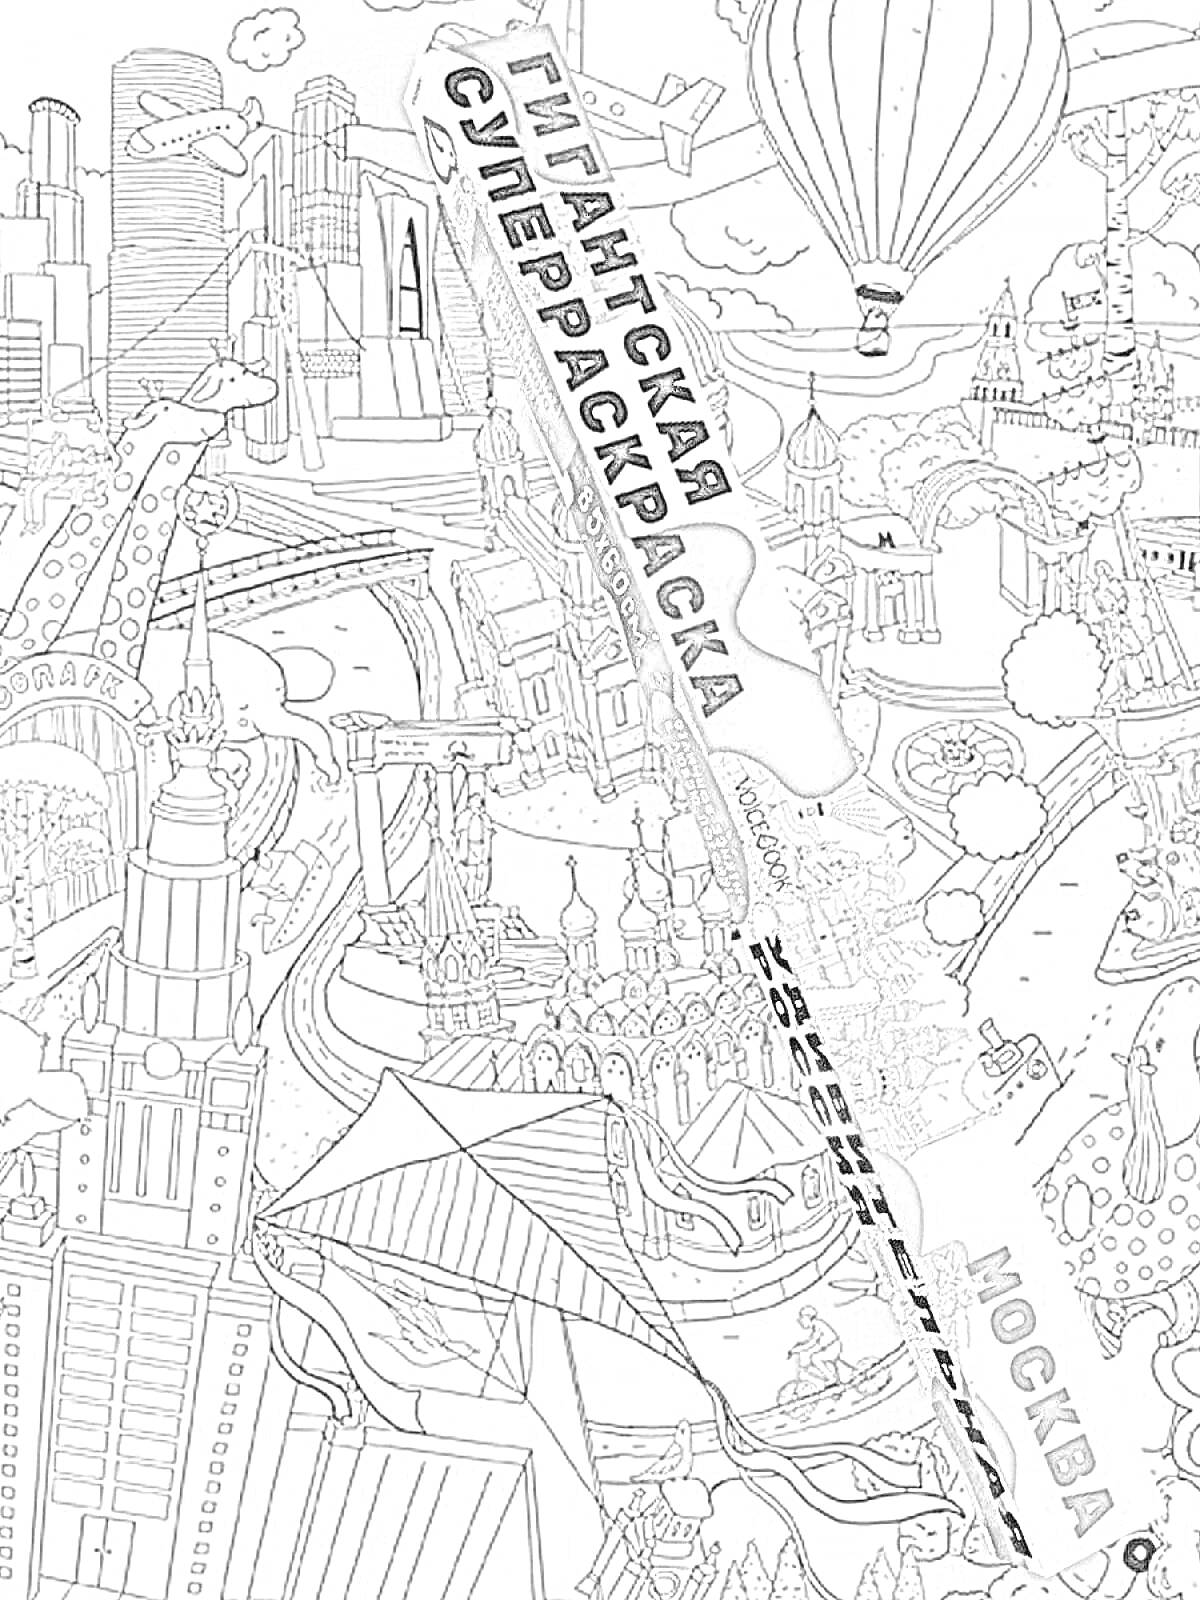 Раскраска Гигантская суперраскраска - город с современными и историческими зданиями, воздушные шары, река, мосты, аттракционы, самолеты, корабли